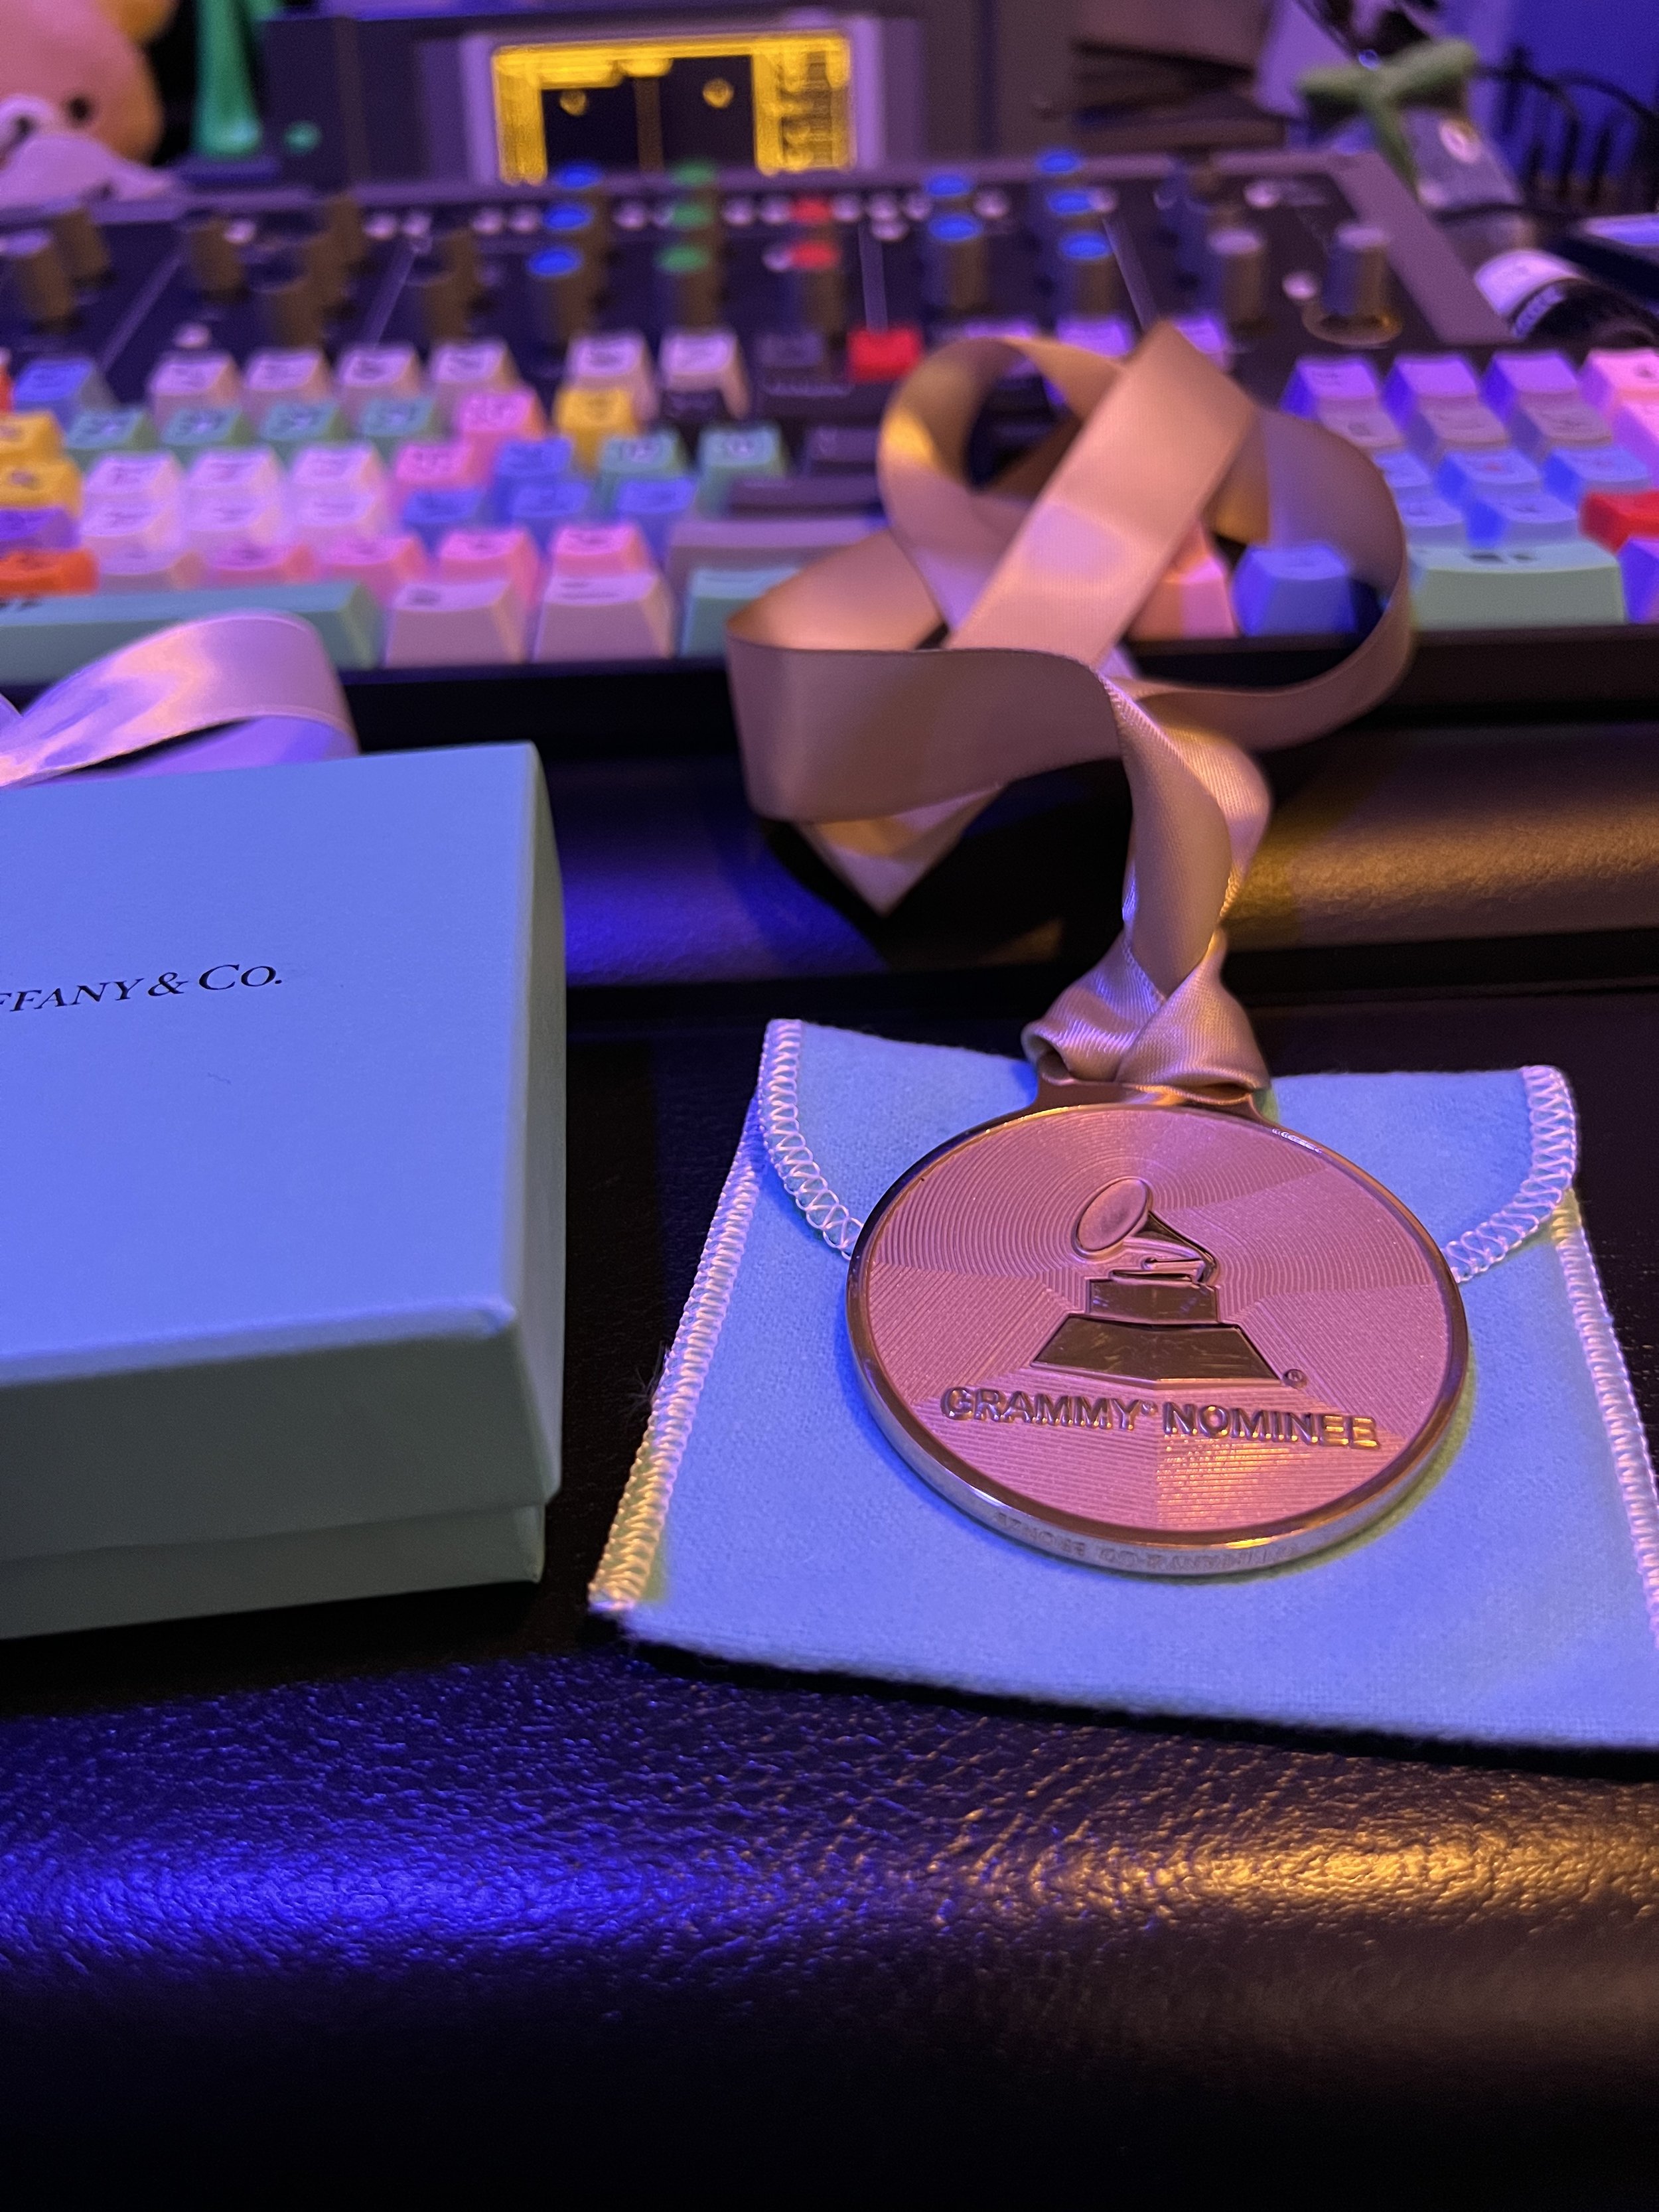 Grammy Nomination Medal Back.jpg